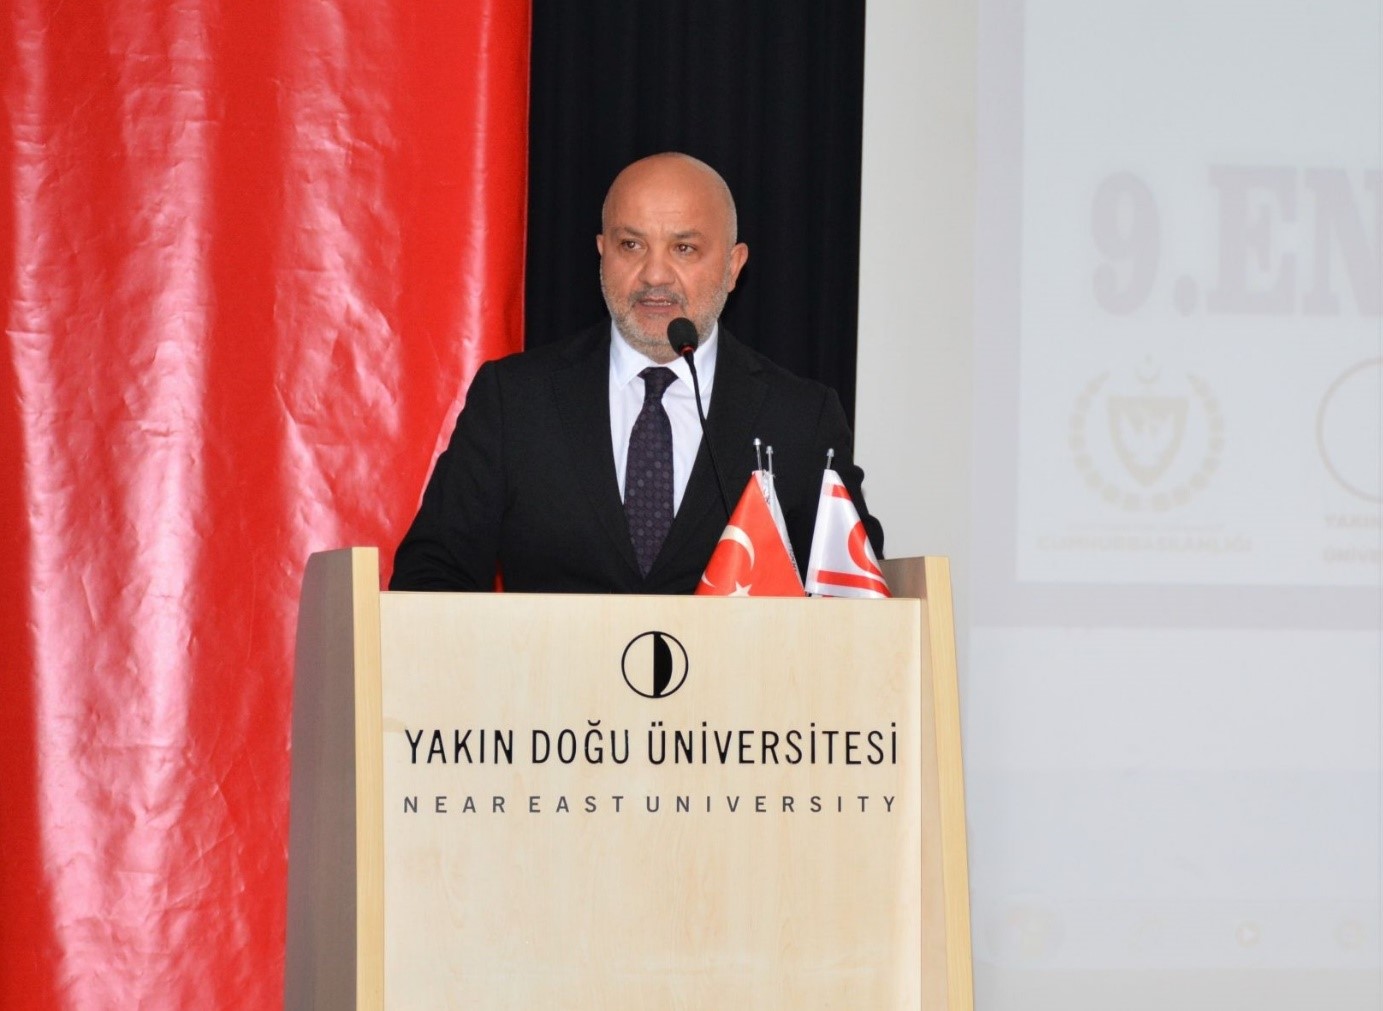 Yakın Doğu Üniversitesi Rektör Yardımcısı Prof. Dr. Tamer ŞANLIDAĞ'ın konuşması